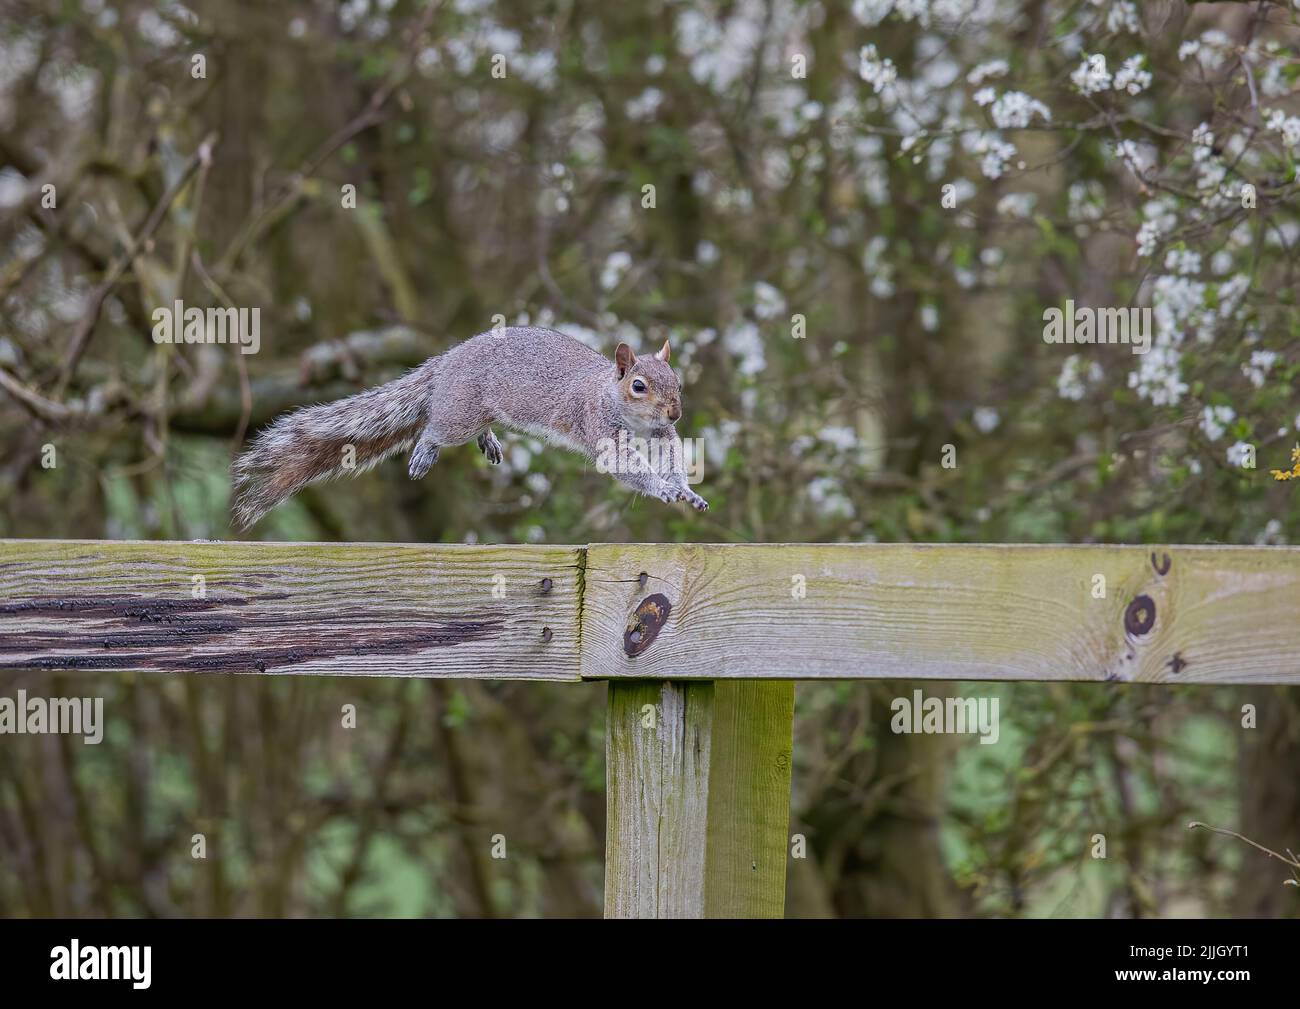 Uno scoiattolo grigio , catturato a mezz'aria, facendo un salto in volo lungo un palo e una recinzione ferroviaria. Suffolk, Regno Unito Foto Stock